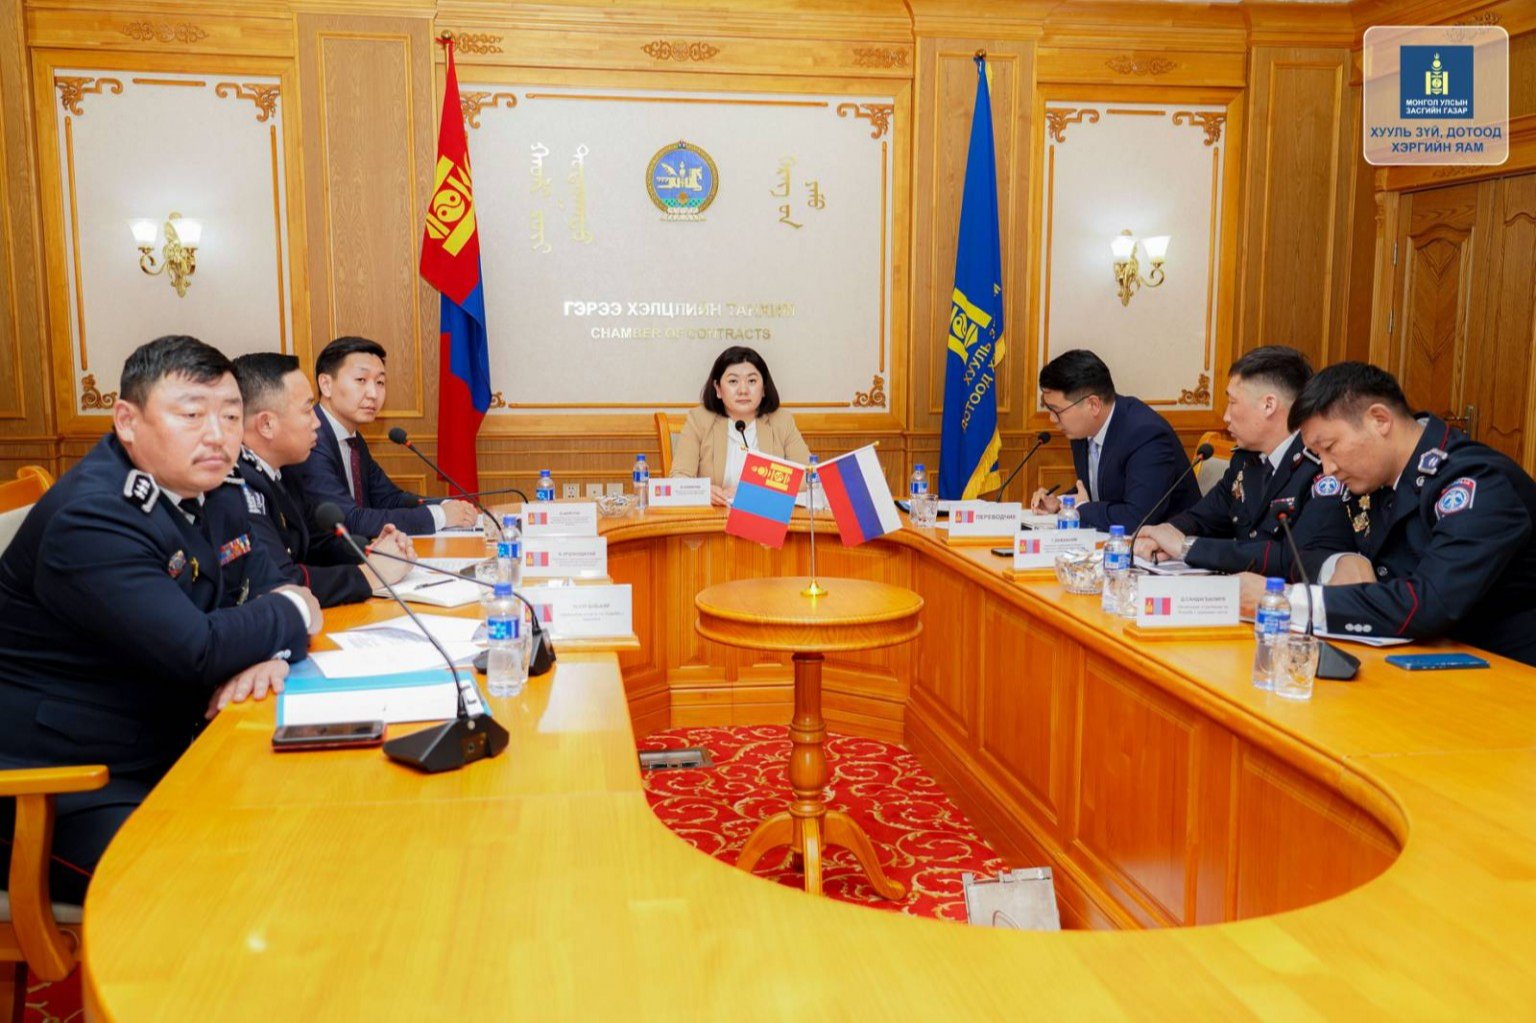 Хил орчмын бүс нутгийн хамтын ажиллагааны асуудлаарх Монгол -Оросын хамтарсан ажлын хэсгийн хуралдаан боллоо